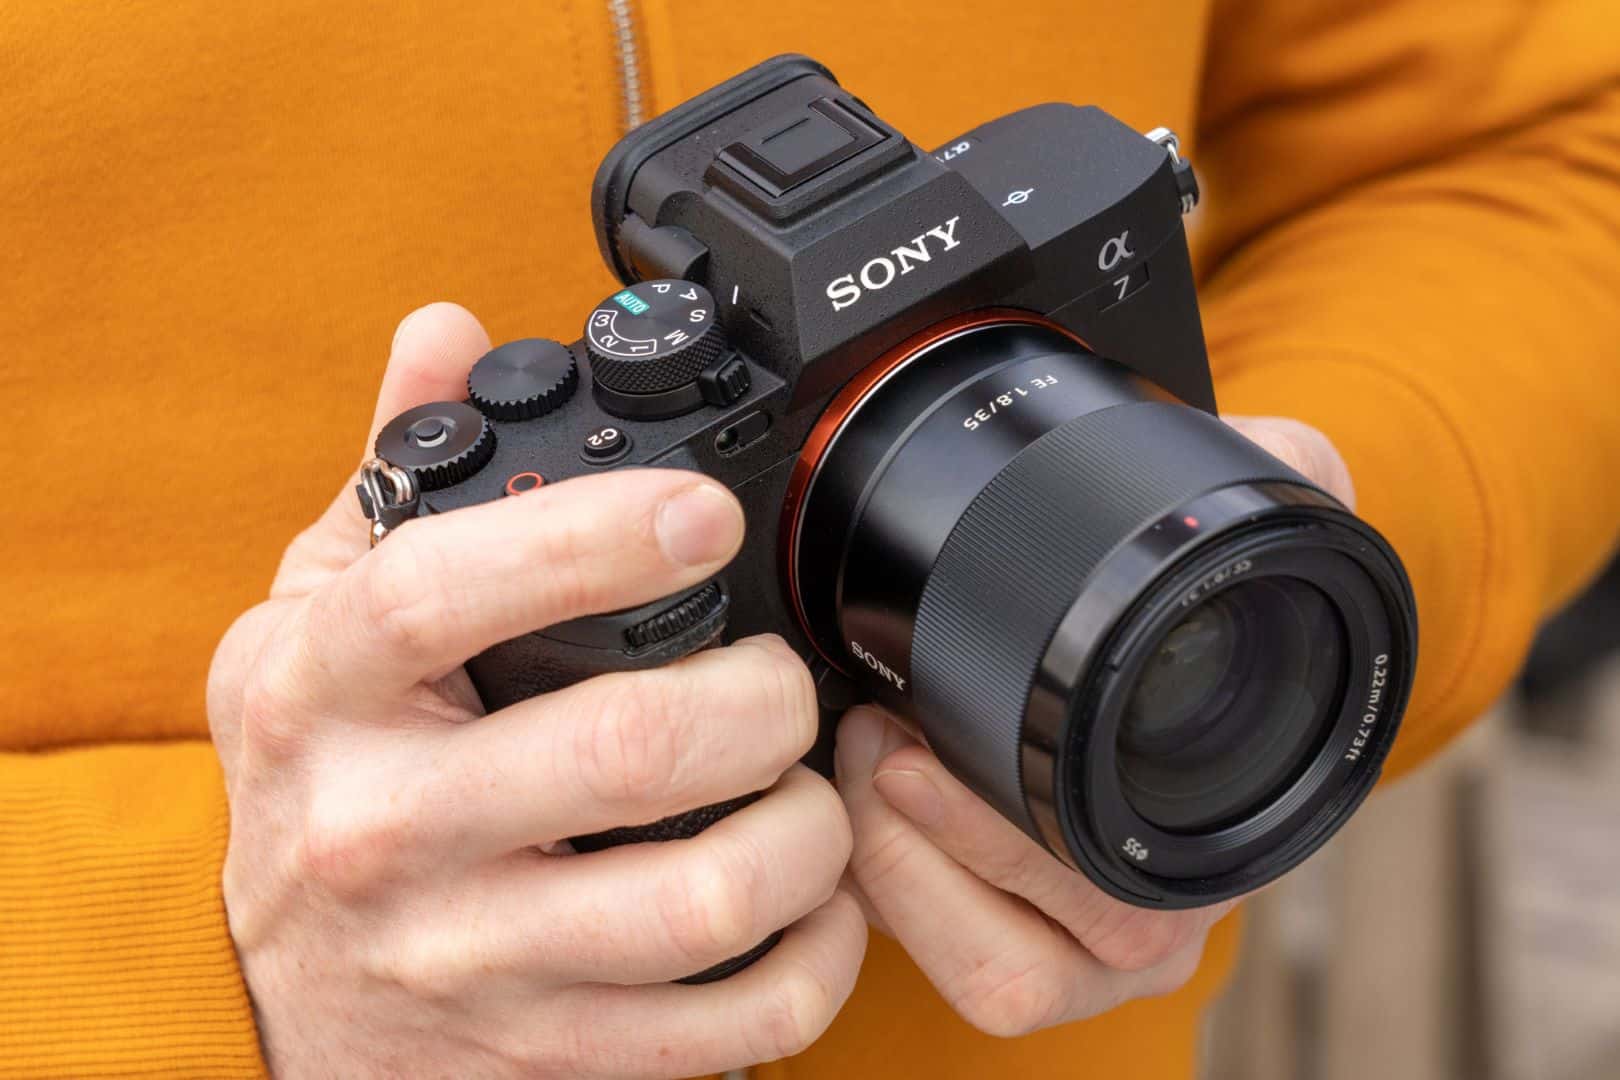 Khuyến mãi tháng 8 cùng Sony, loạt máy ảnh giảm giá cực hấp dẫn dành cho bạn